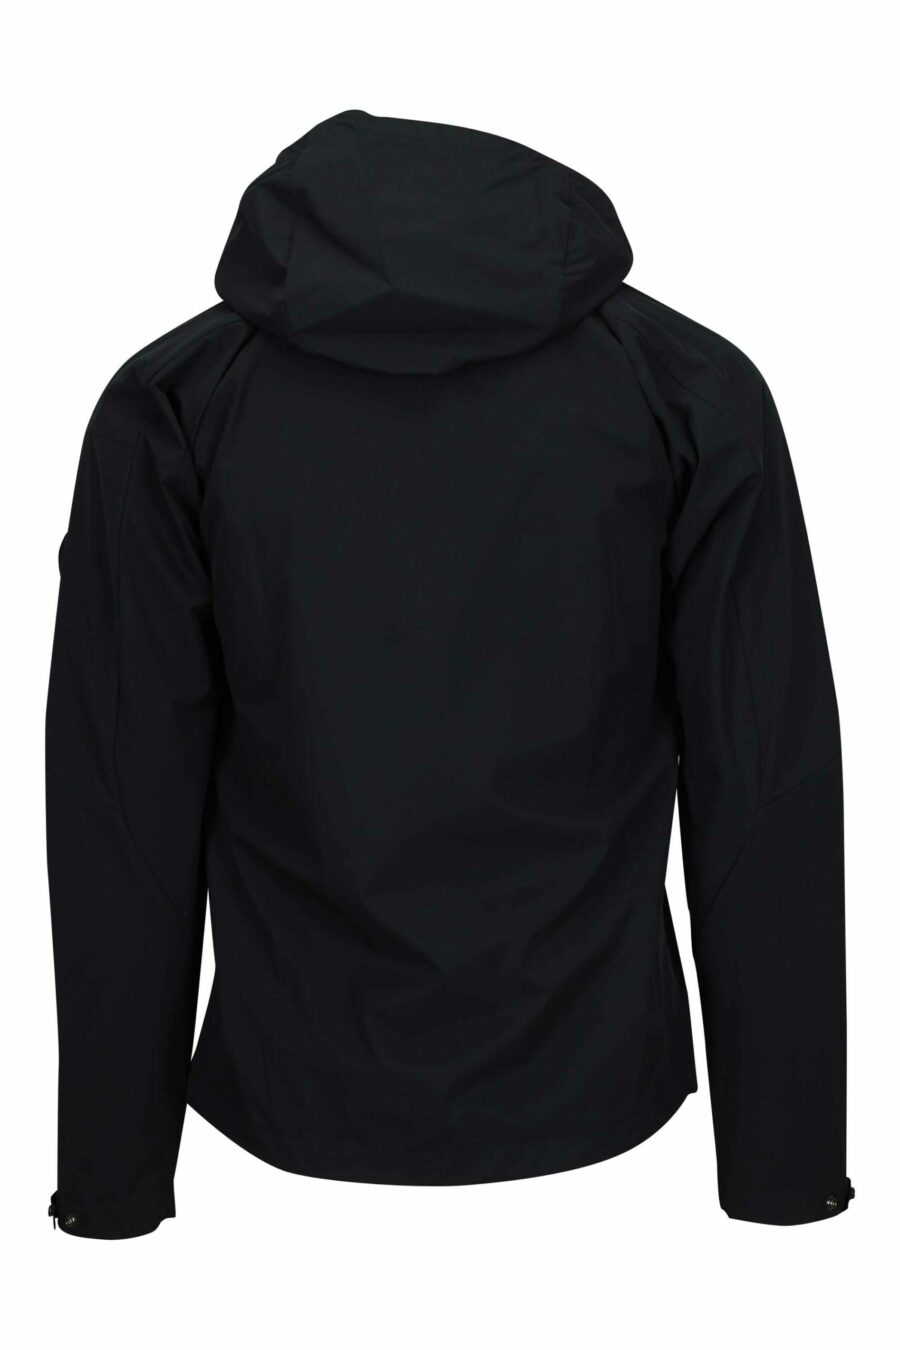 Schwarze Jacke mit Kapuze und Minilogue-Objektiv - 108276 skaliert